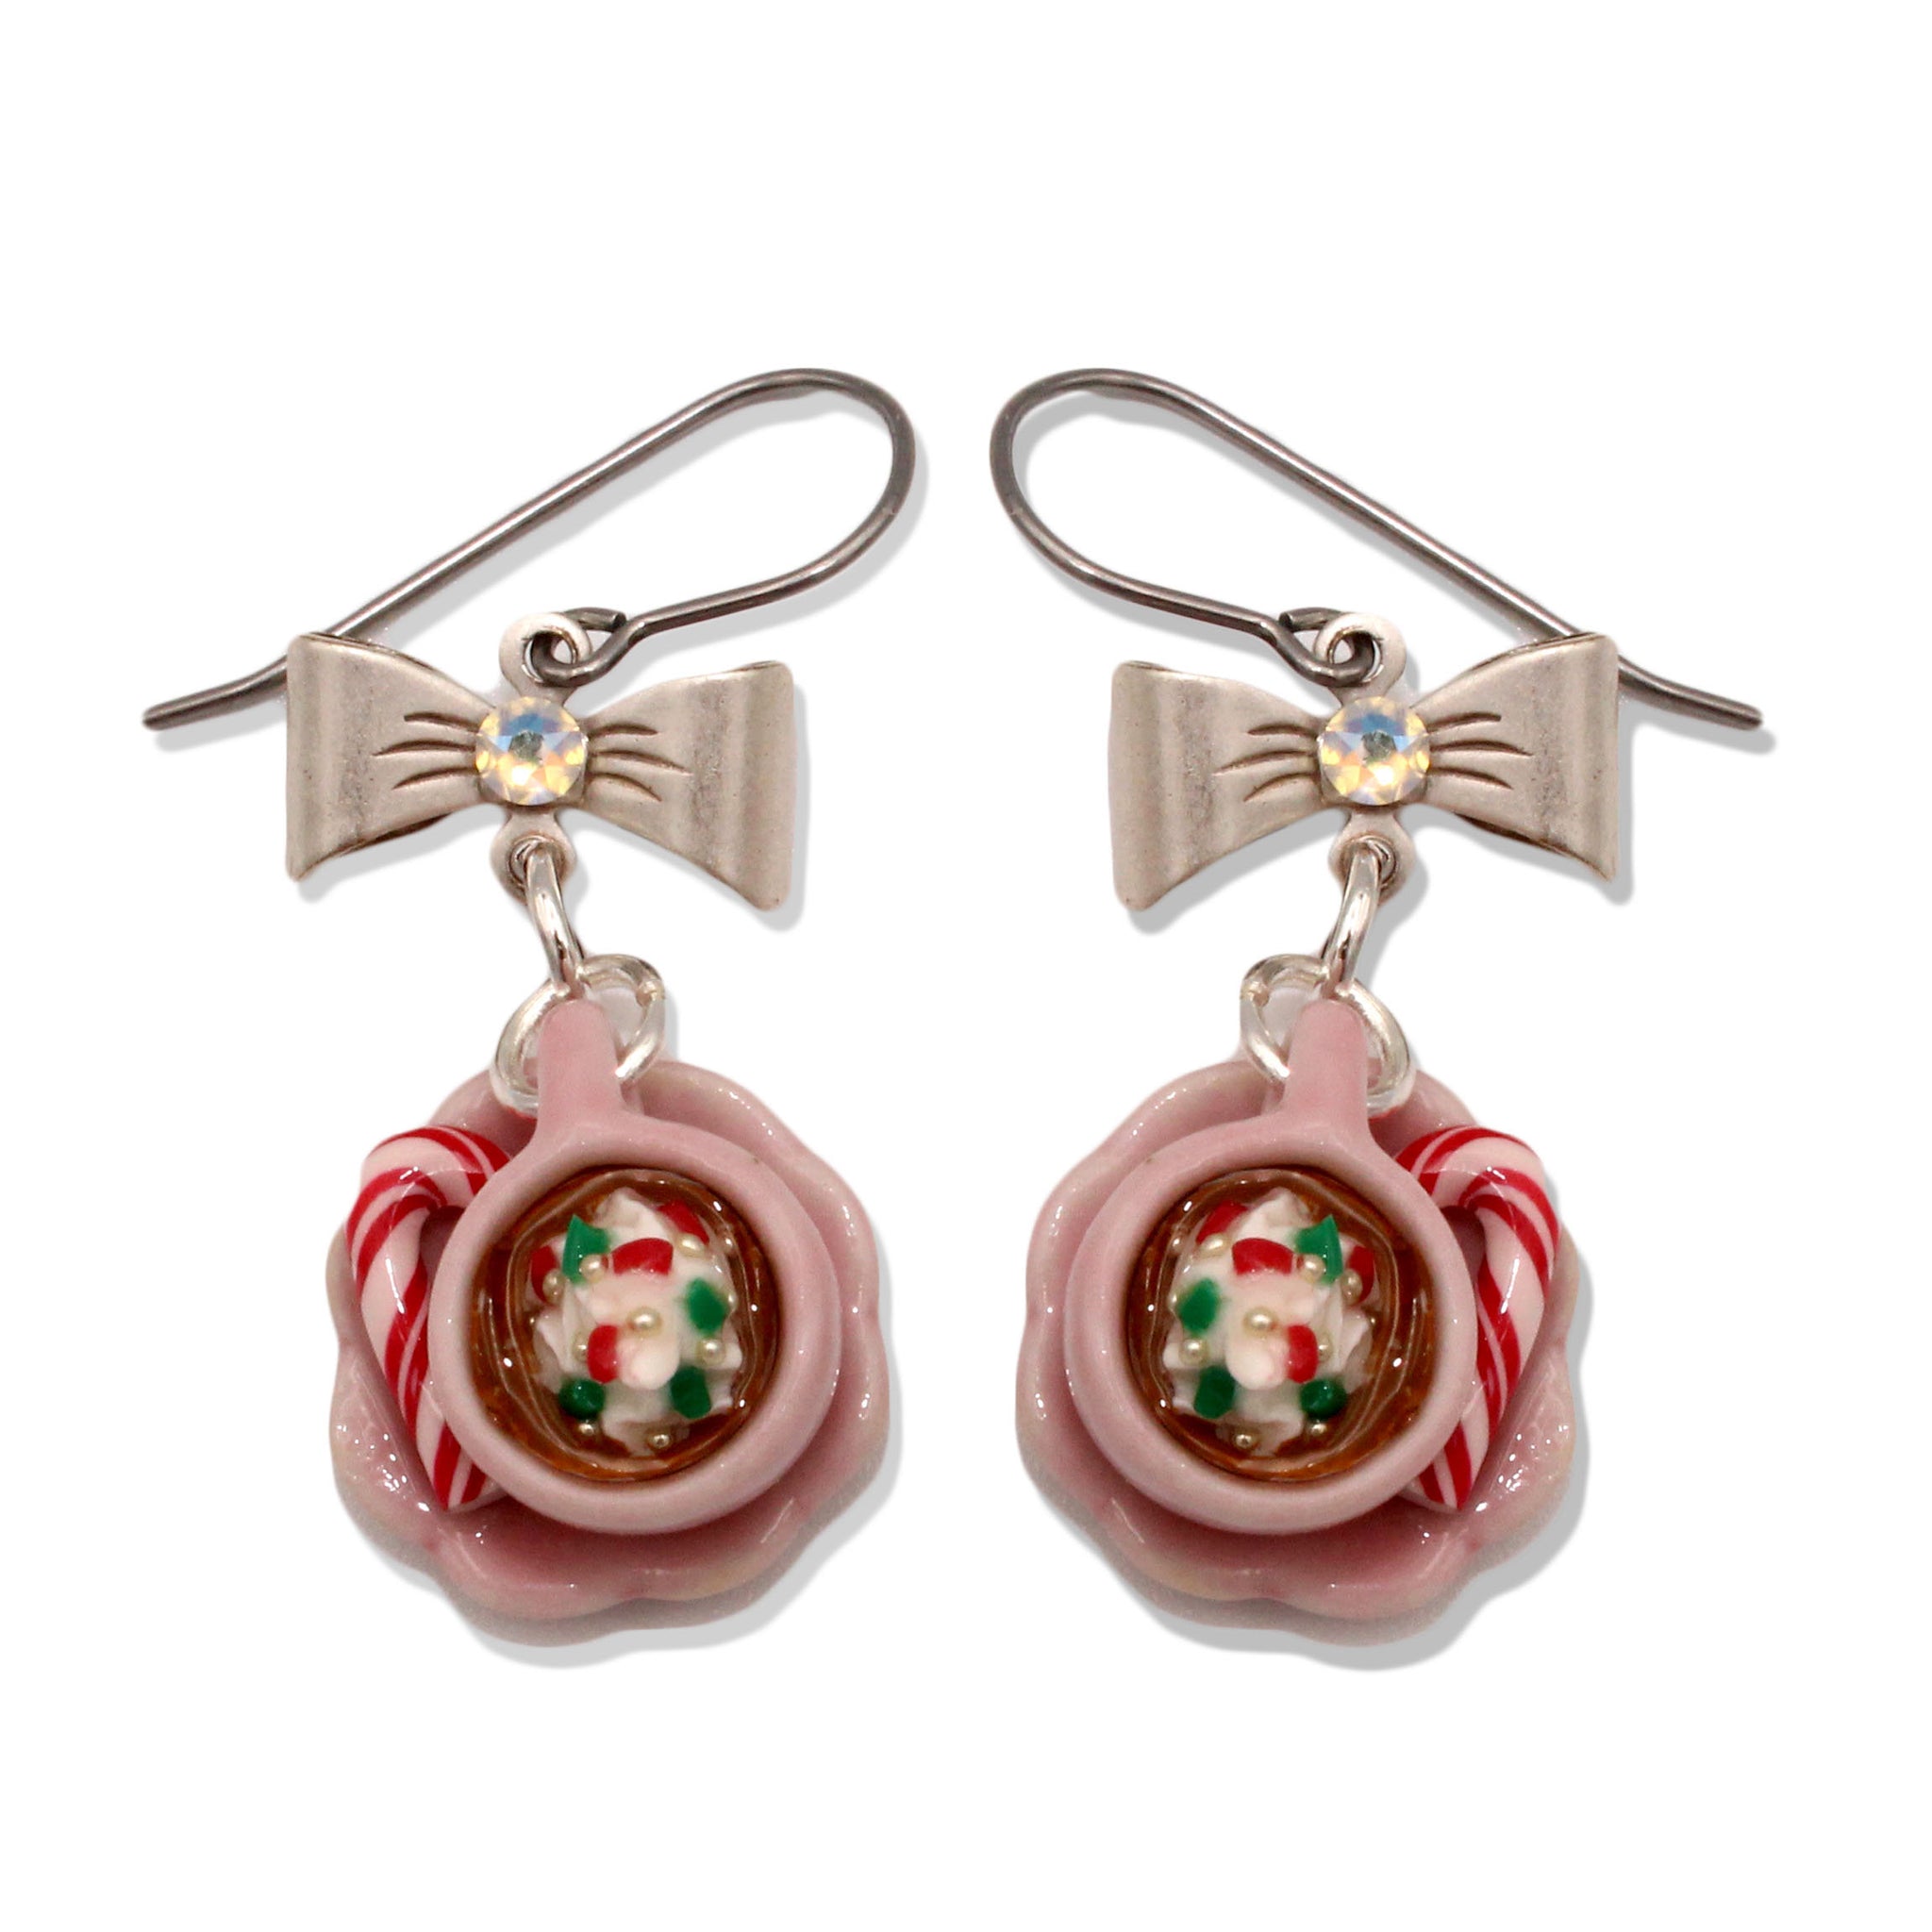 Hot Cocoa Earrings, Christmas Charm Earrings, Miniature Food